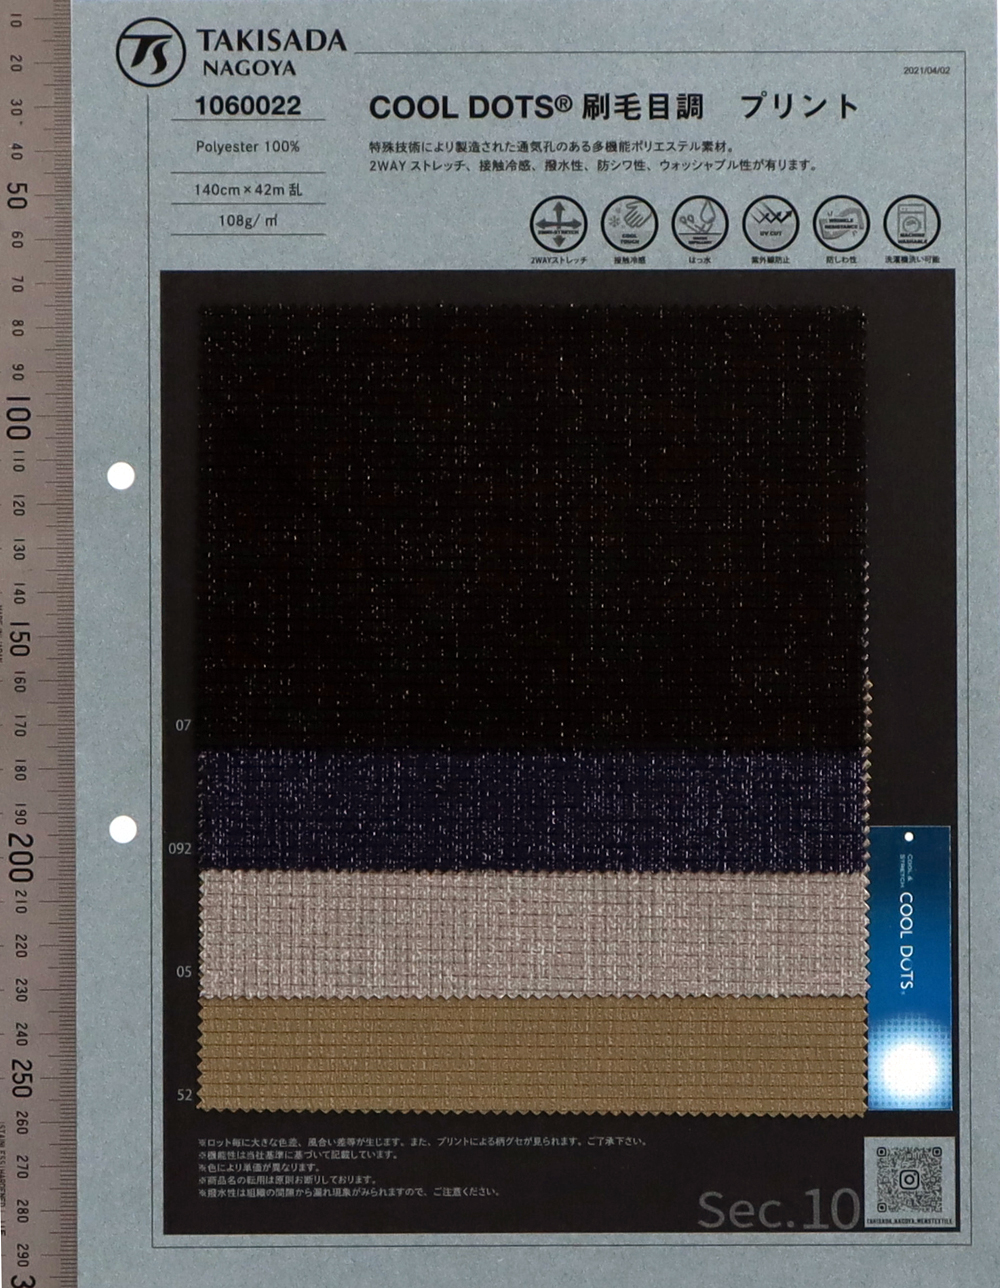 1060022 Impresión De Trazo De Pincel COOLOTS[Fabrica Textil] Takisada Nagoya